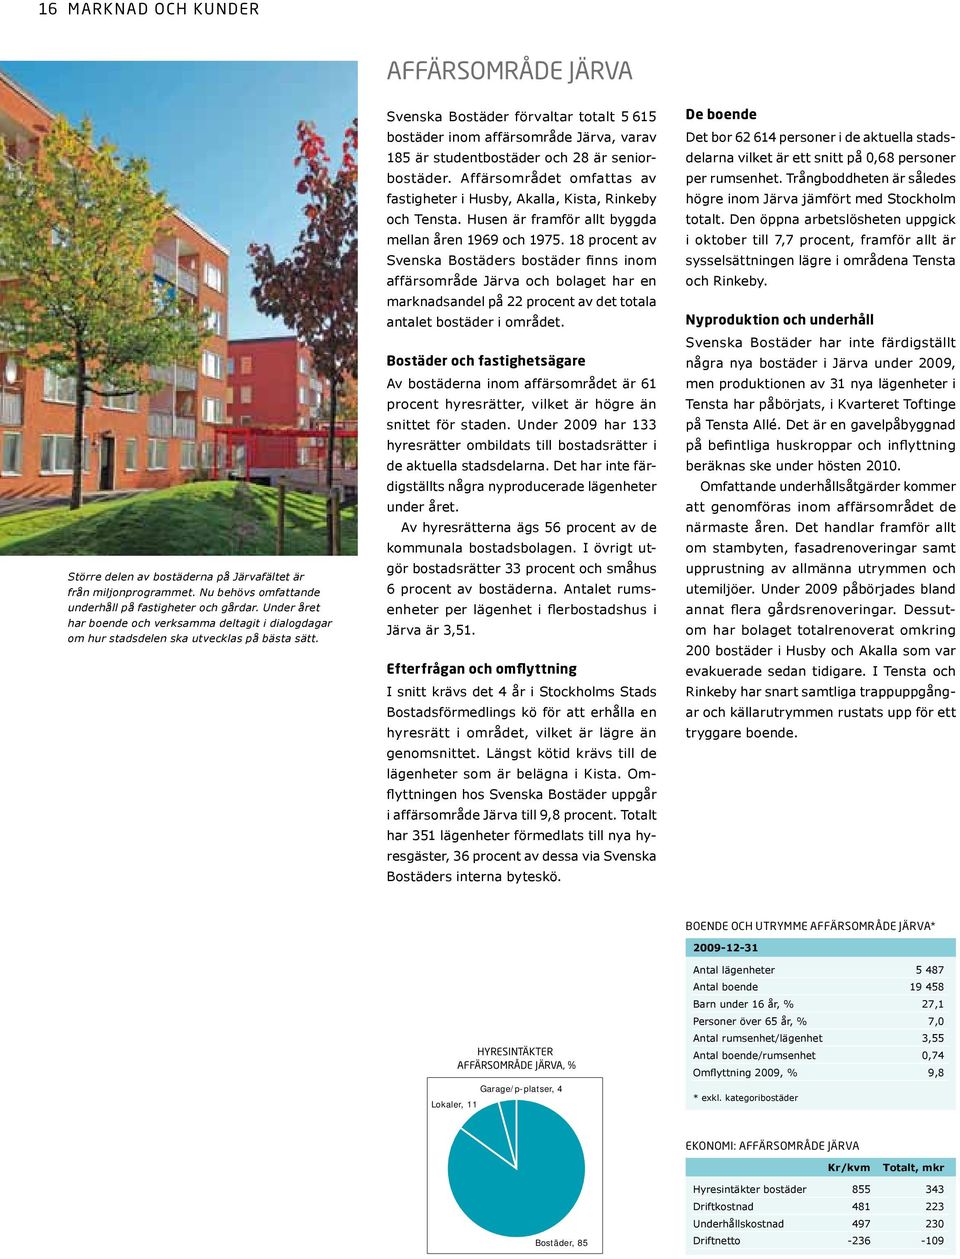 Svenska Bostäder förvaltar totalt 5 615 bostäder inom affärsområde Järva, varav 185 är studentbostäder och 28 är seniorbostäder.